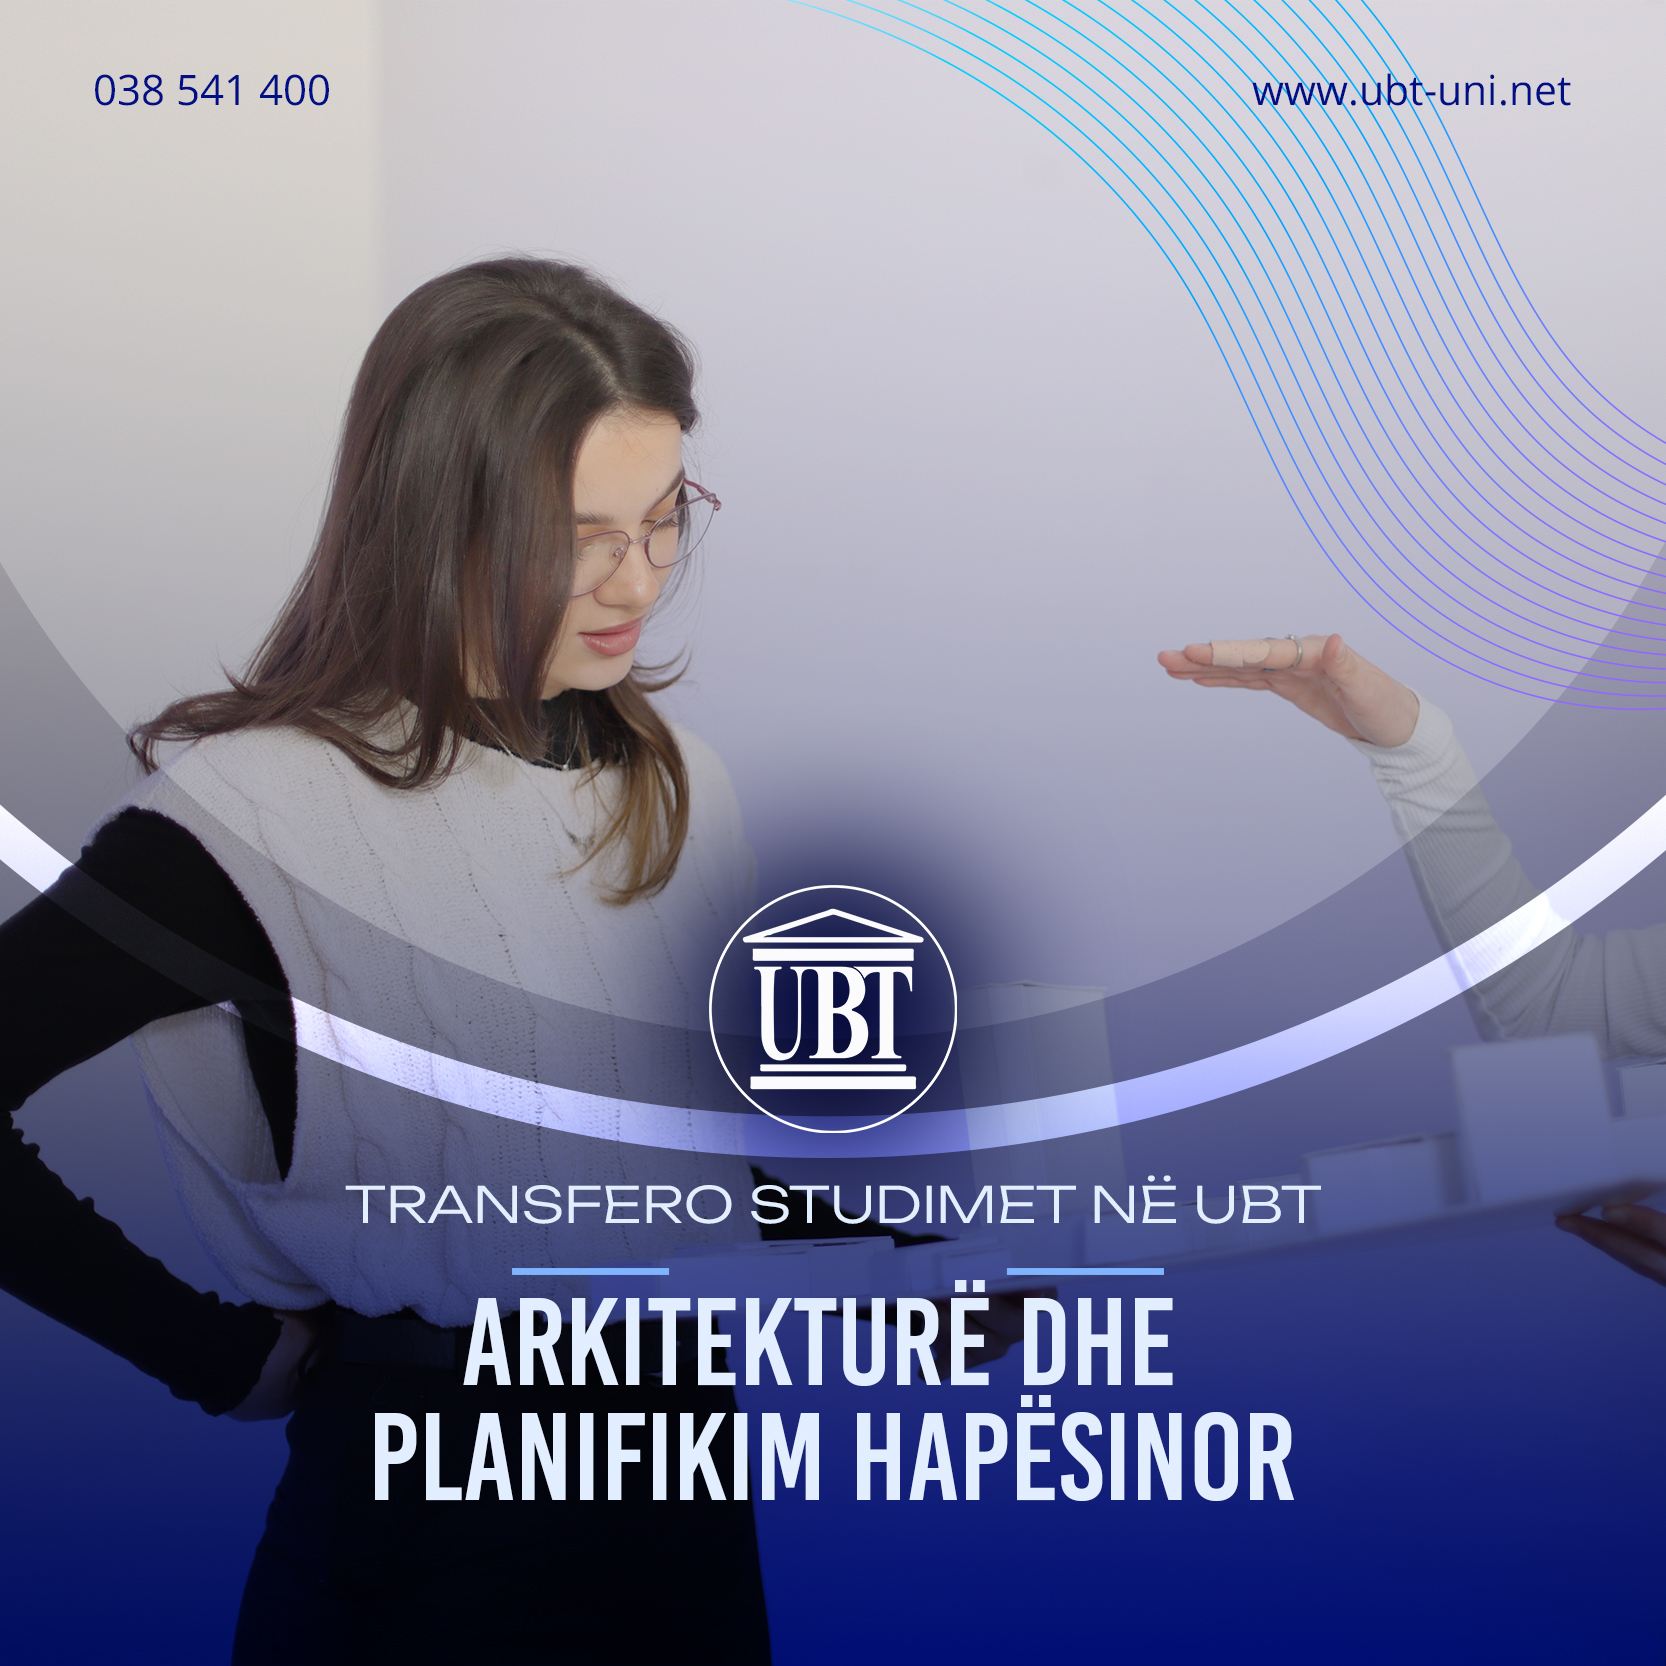 Shndërrohu në profesionist të arkitekturës, duke transferuar studimet në programin Arkitekturë dhe Planifikim Hapësinor në UBT!